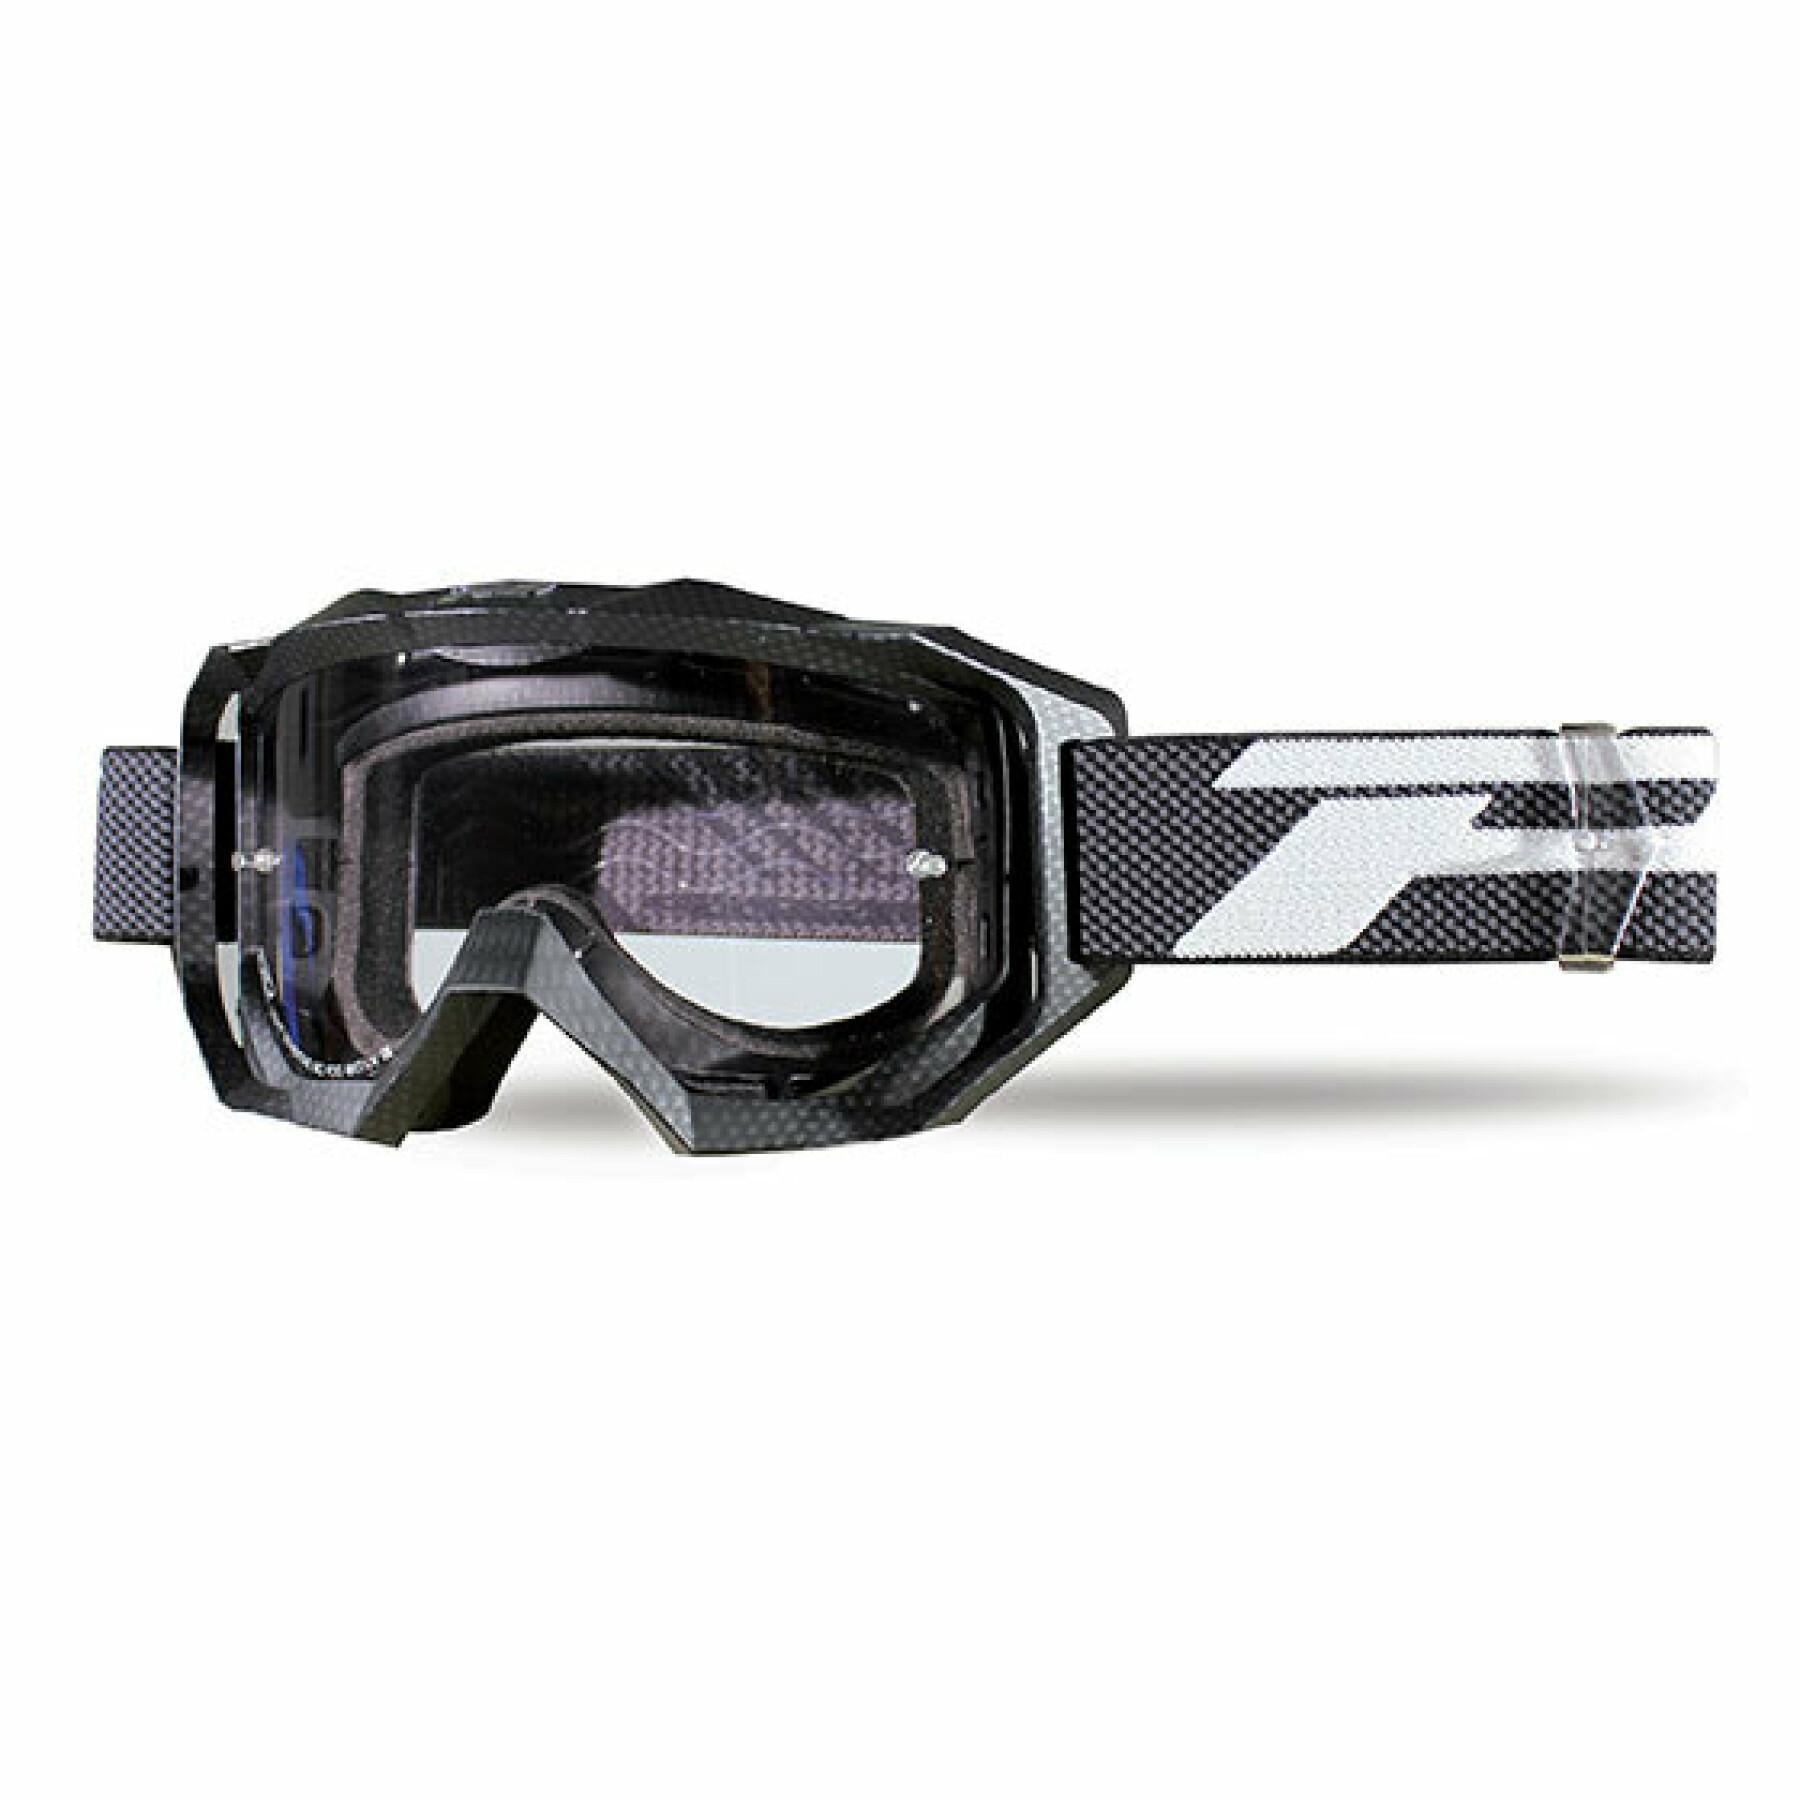 Motorrad-Cross-Maske Progrip venom light sensitive 3200